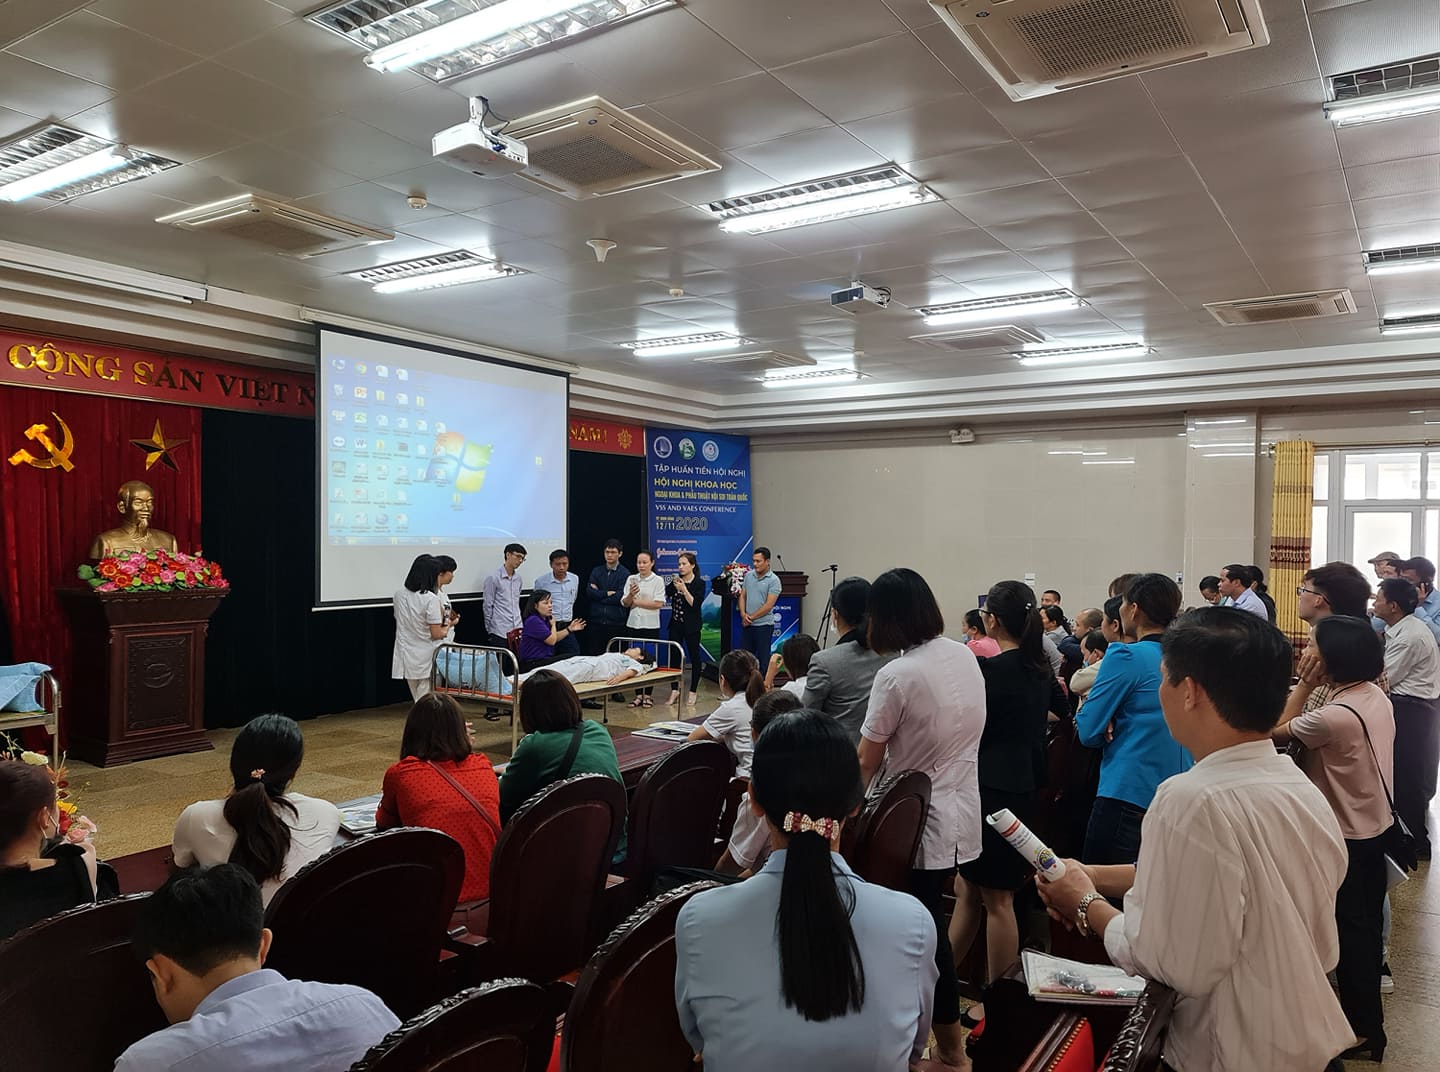 Khoá A1-63 tại Bệnh viện đa khoa tỉnh Ninh Bình (17/11 - 20/11/2020)